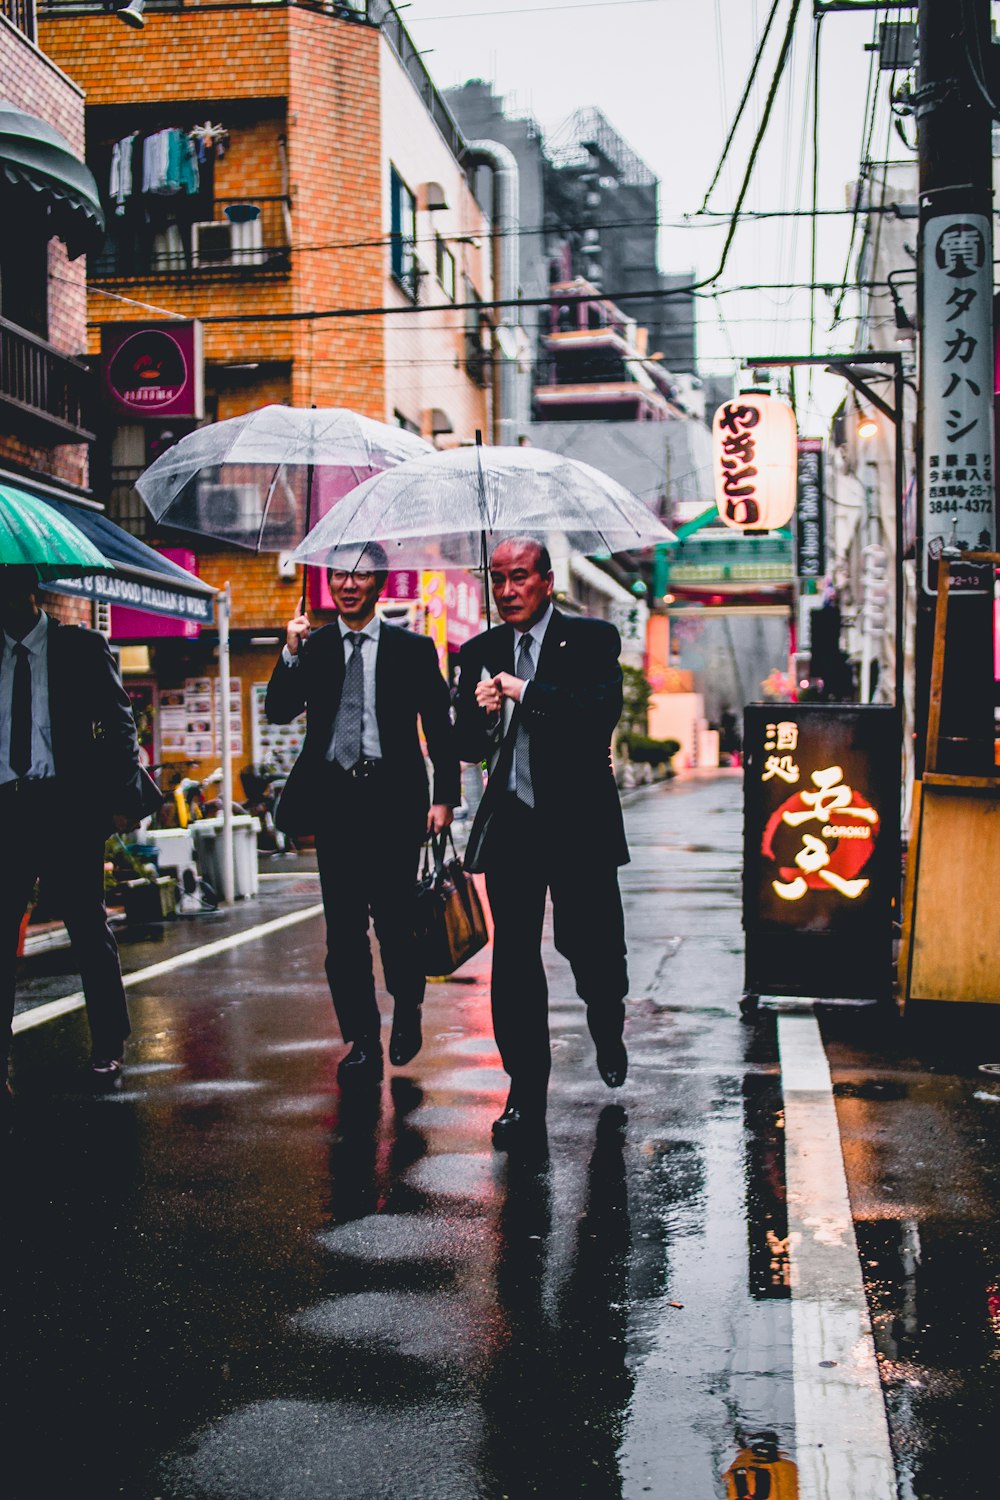 黒いスーツを着た2人の男性が透明な傘を持って通りを歩く